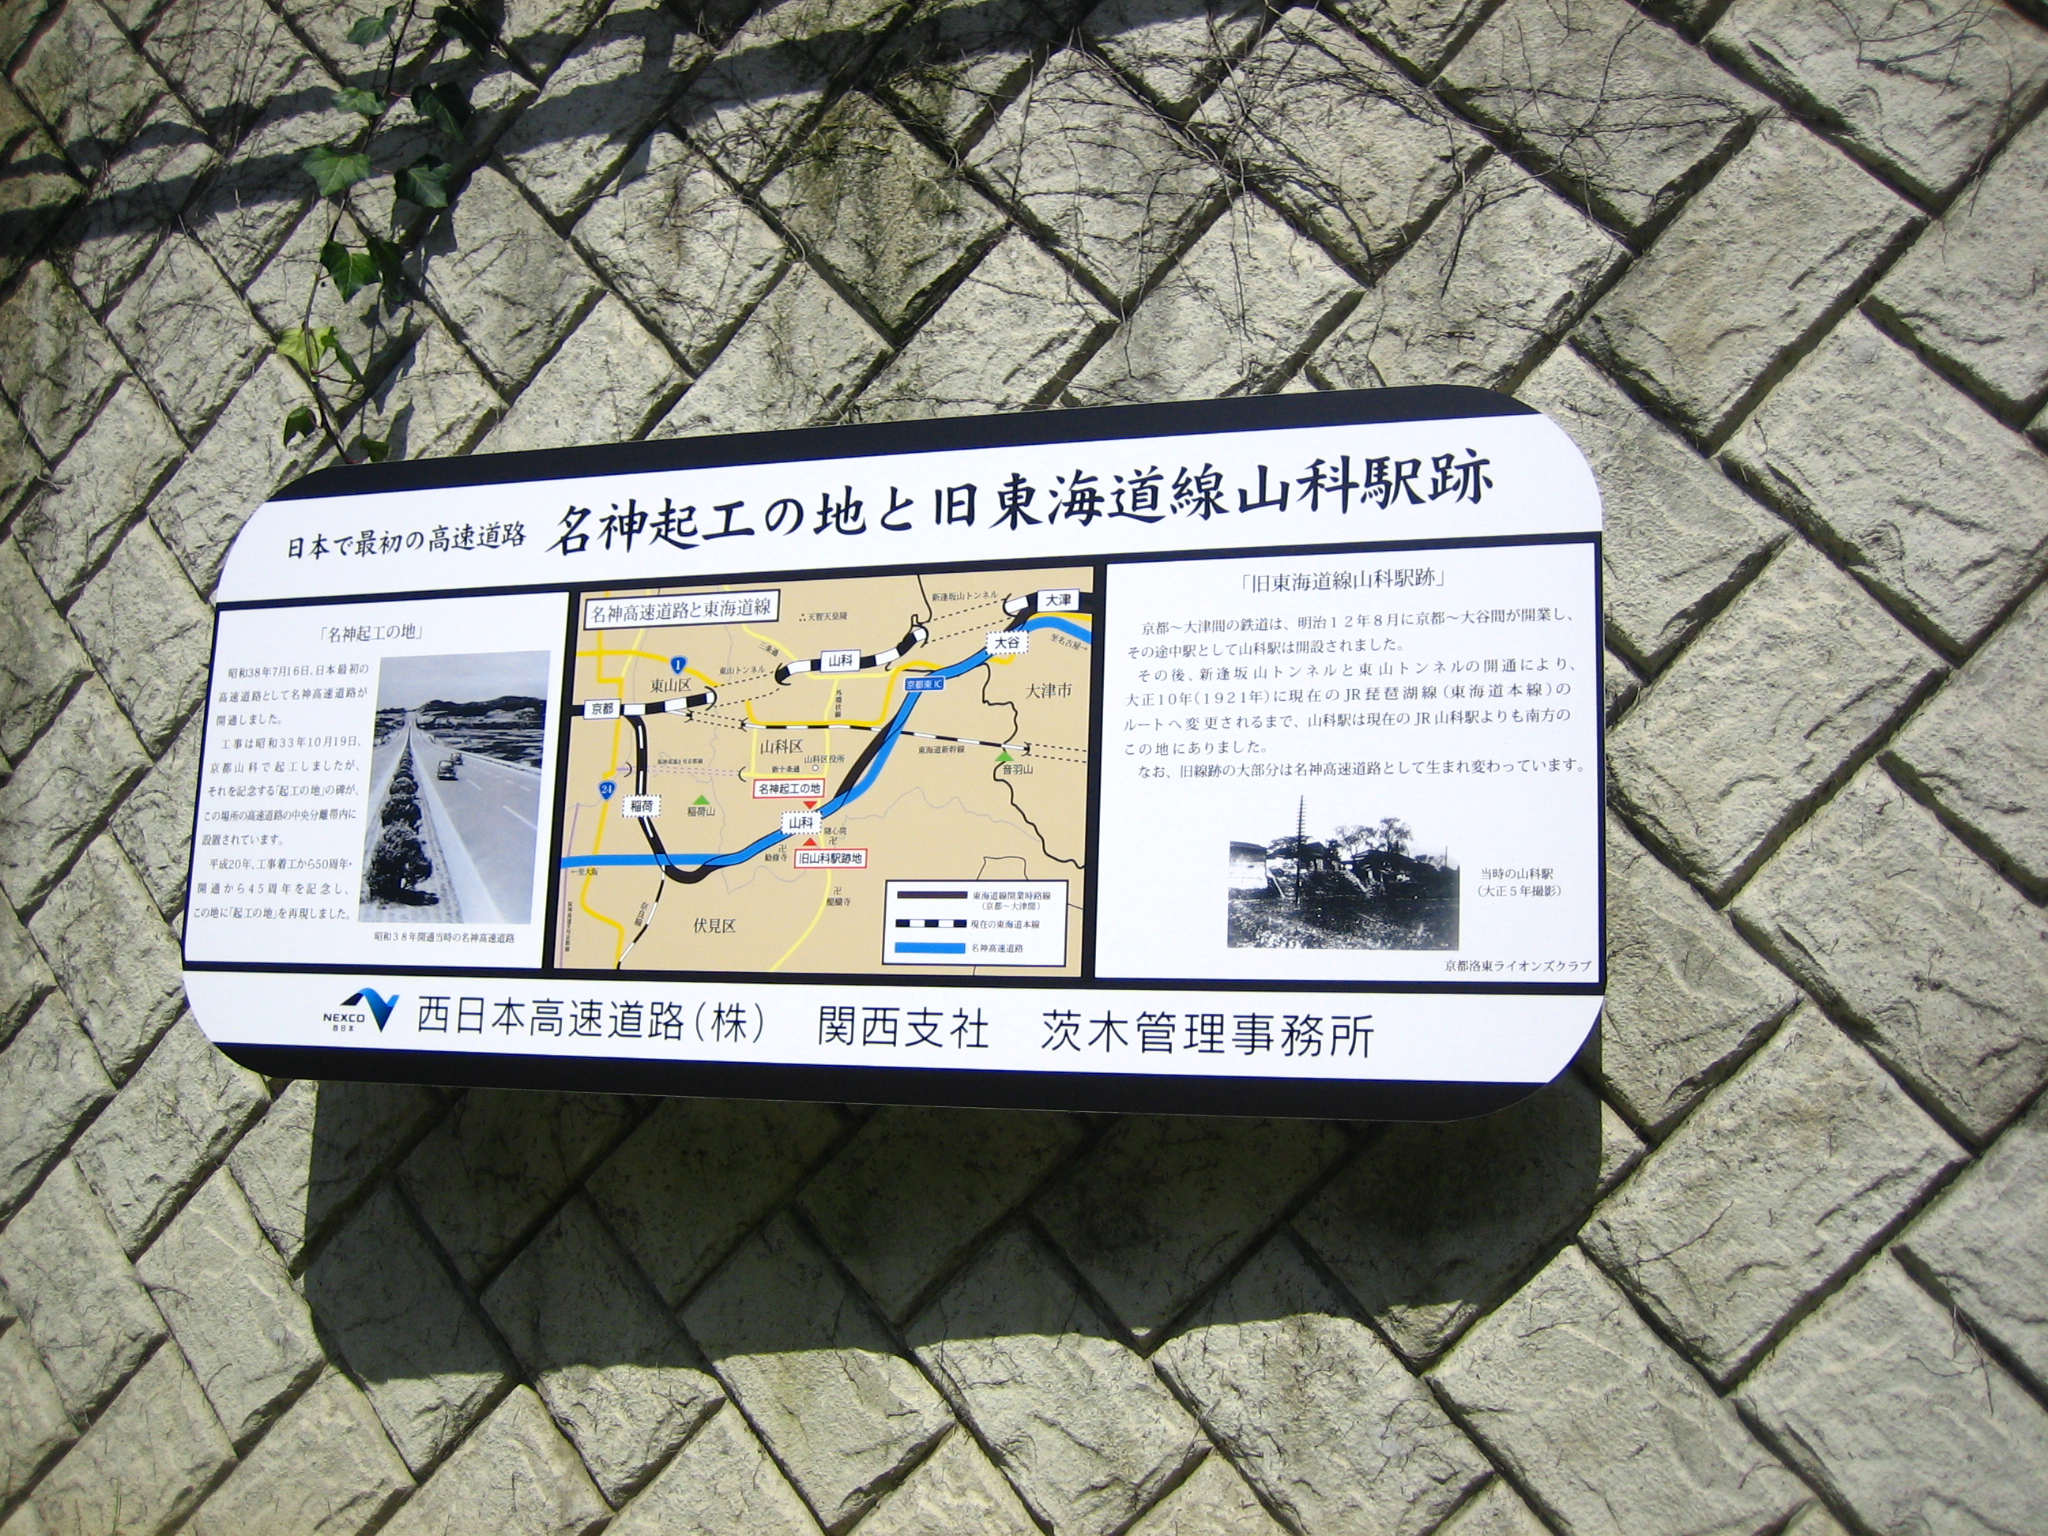 山科駅跡に設置された解説が書かれた看板